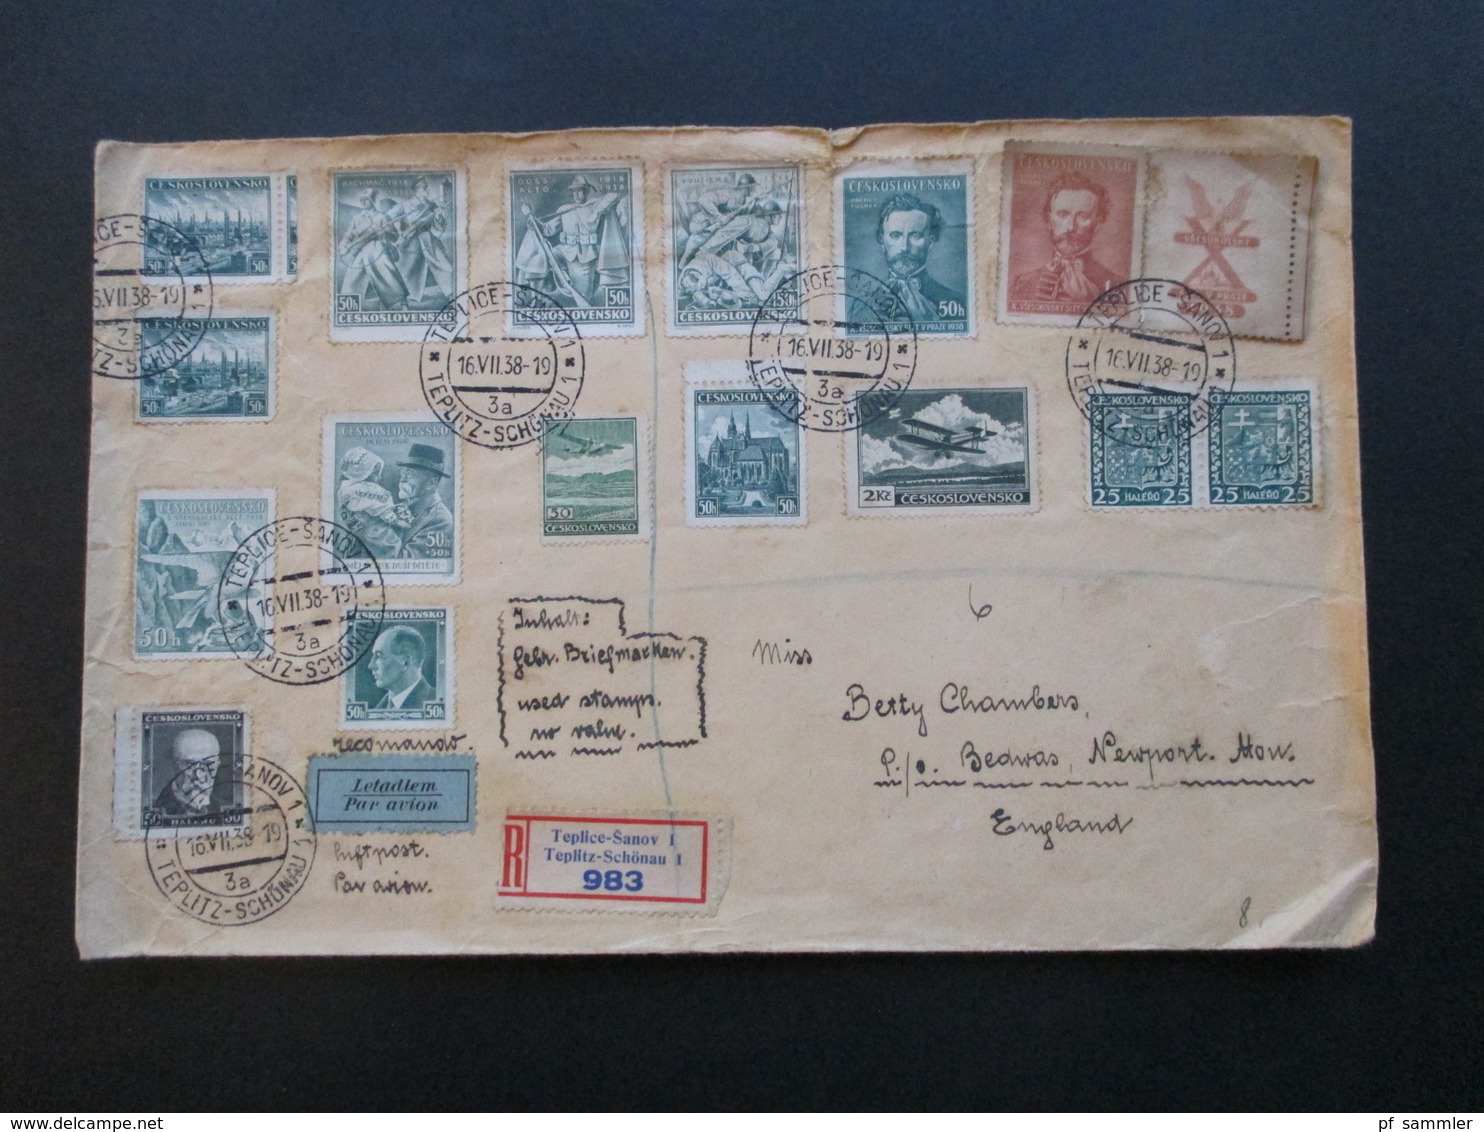 CSSR 1938 Beleg Mit 16 Marken Per Luftpost Letadlem Einschreiben Teplice Sanov 1 Nach Newport England - Storia Postale